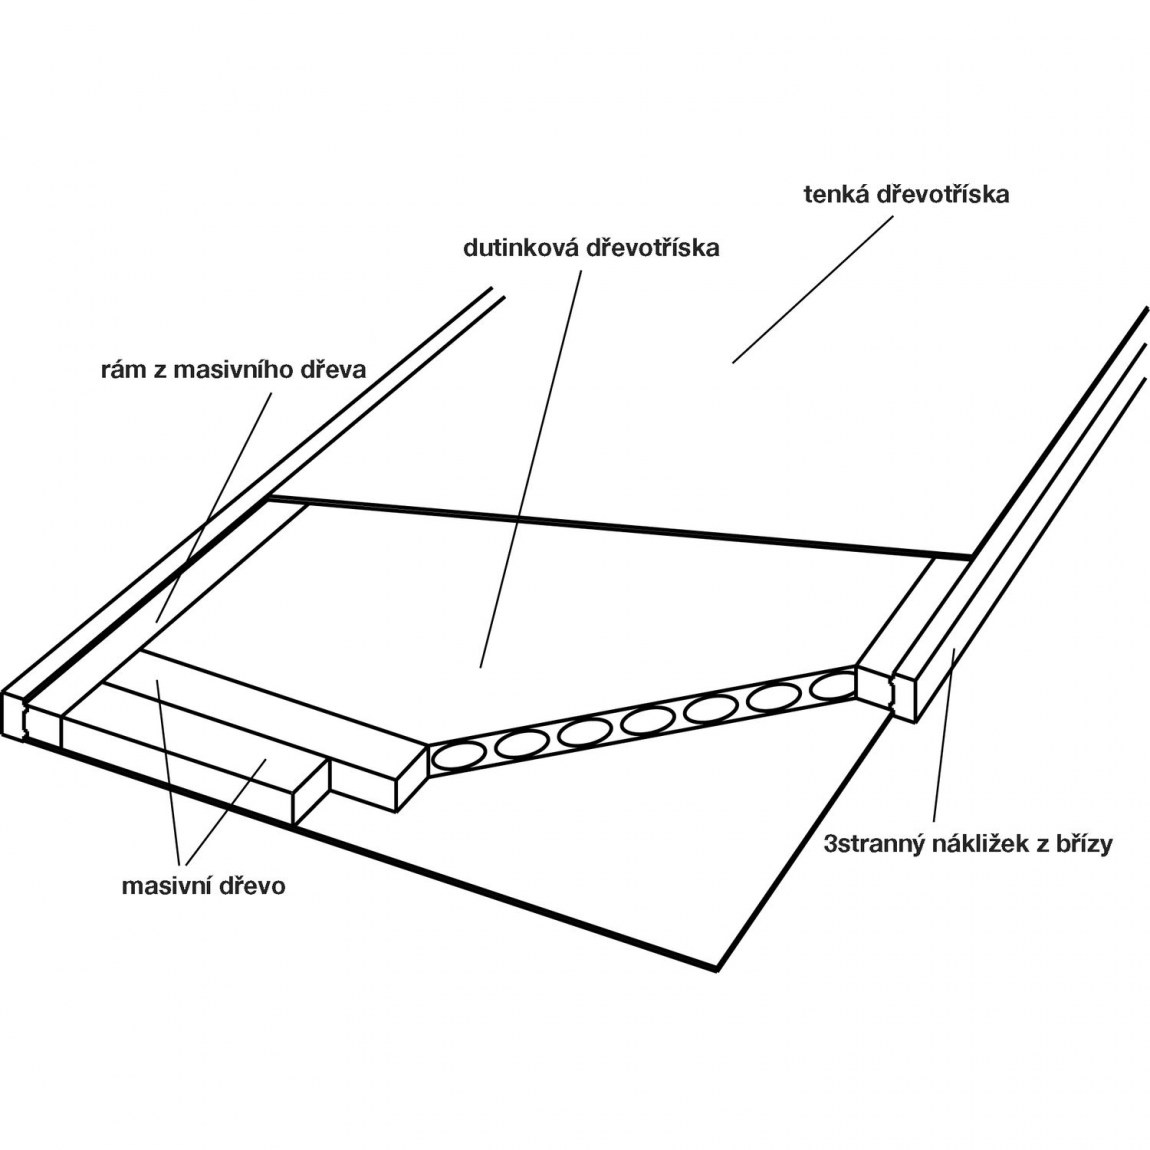 Dveřní polotovar Optimal RS, nákližek bříza - šířka 950 mm výška 2030 mm